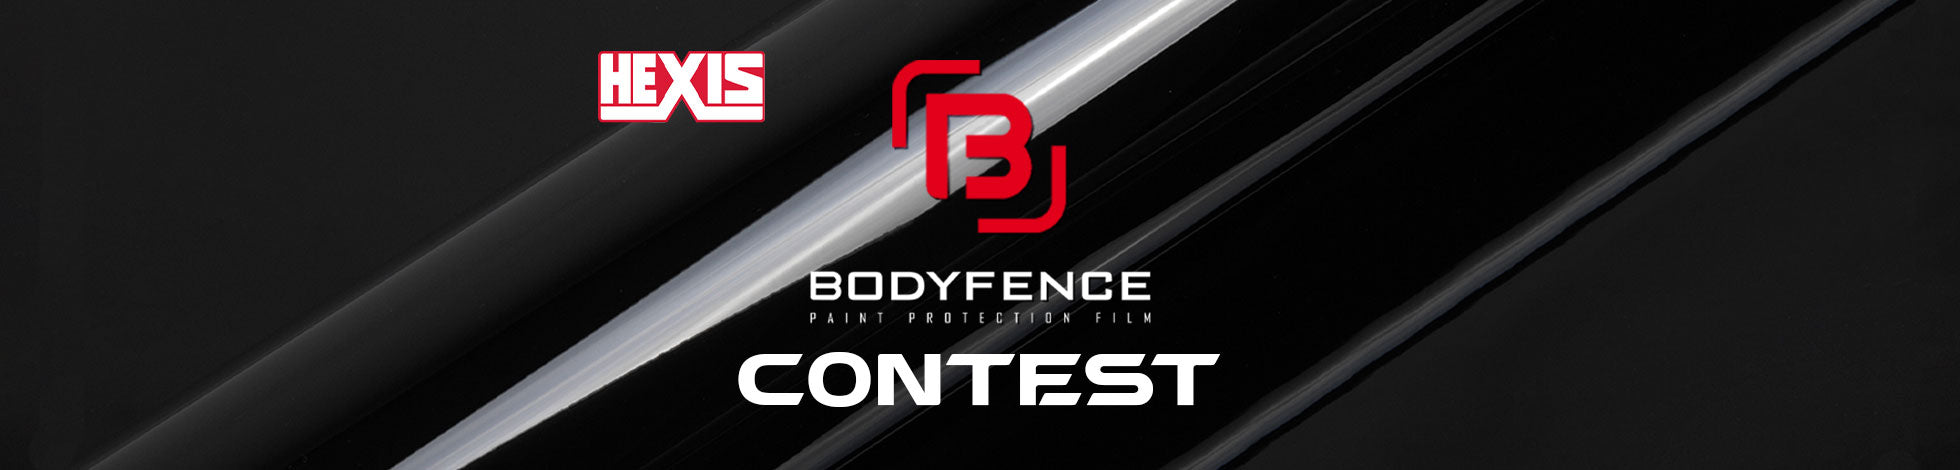 Hexis BodyFence Contest